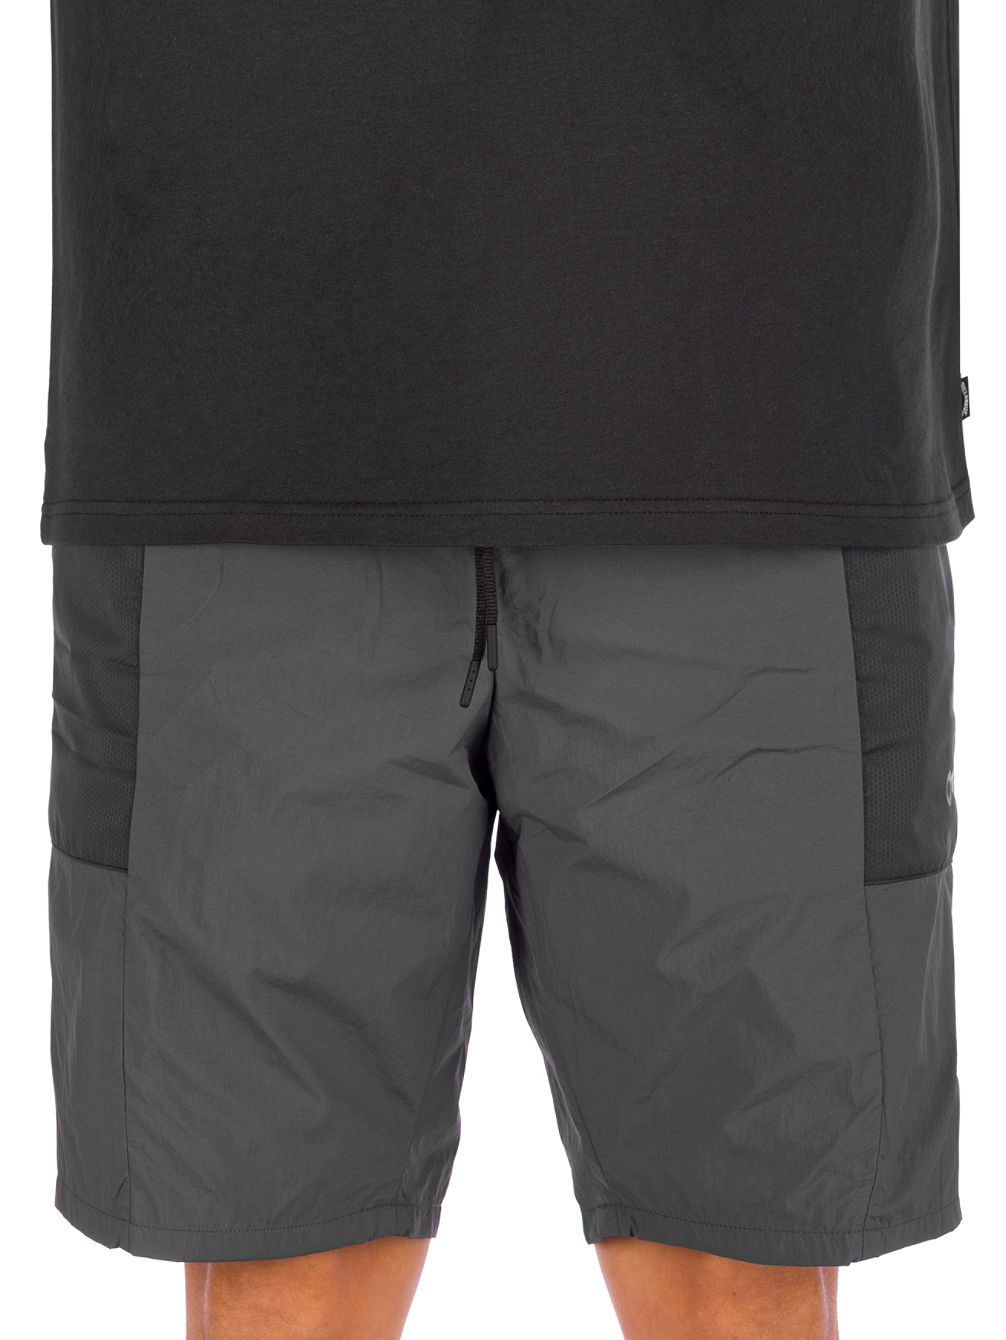 Retro Lite Packable Shorts